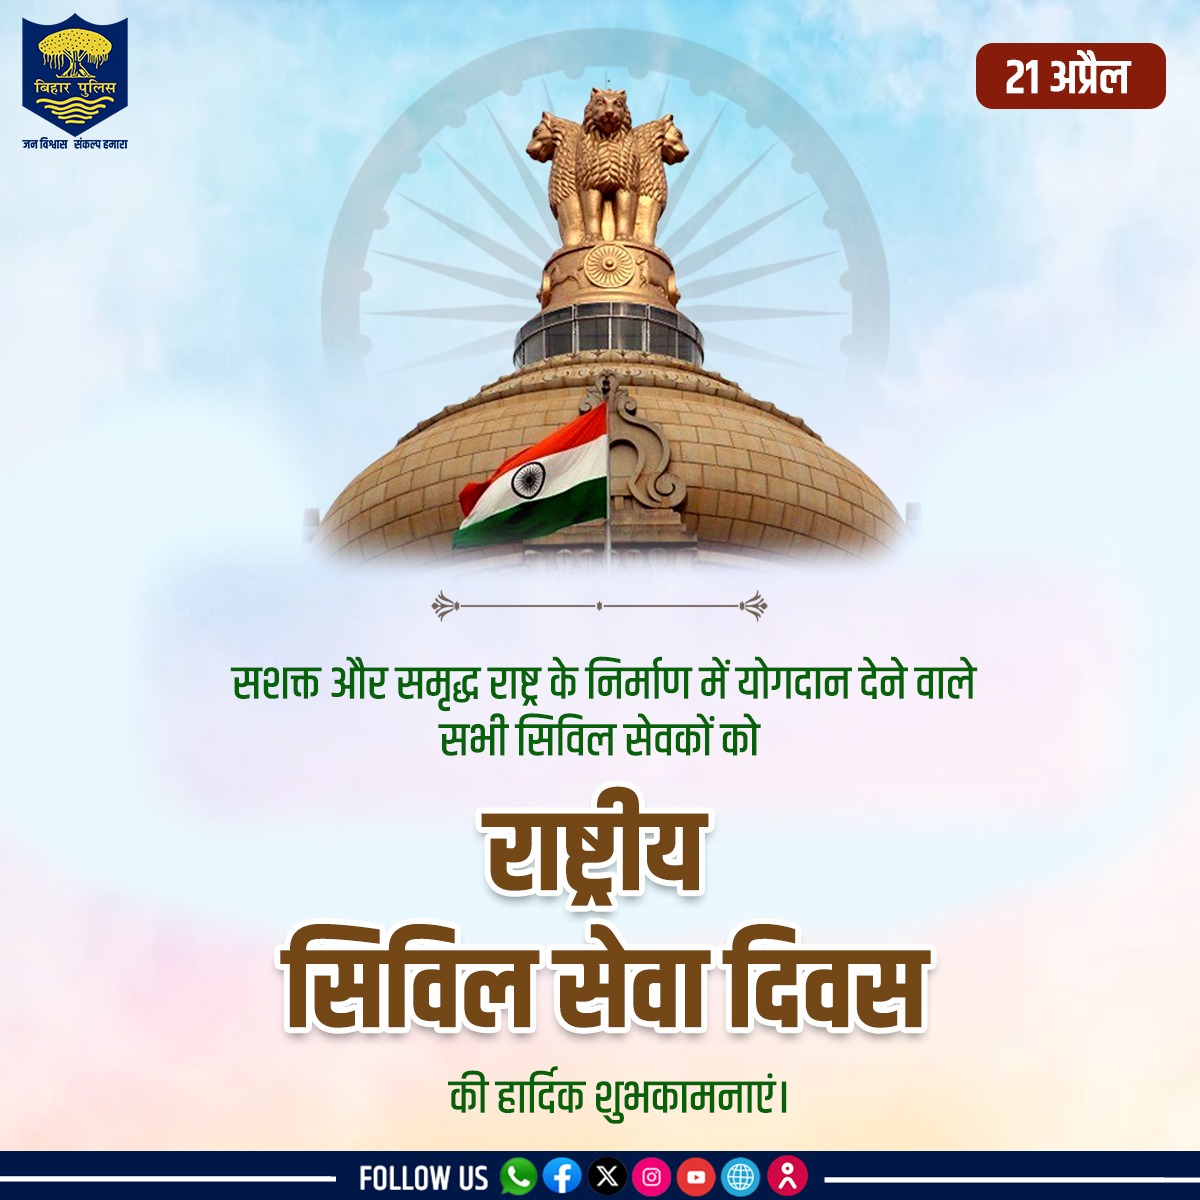 #BiharPolice की ओर से सभी सिविल सेवकों को राष्ट्रीय सिविल सेवा दिवस की हार्दिक बधाई...
.
.
#NationalCivilServiceDay #CivilServices #Bihar